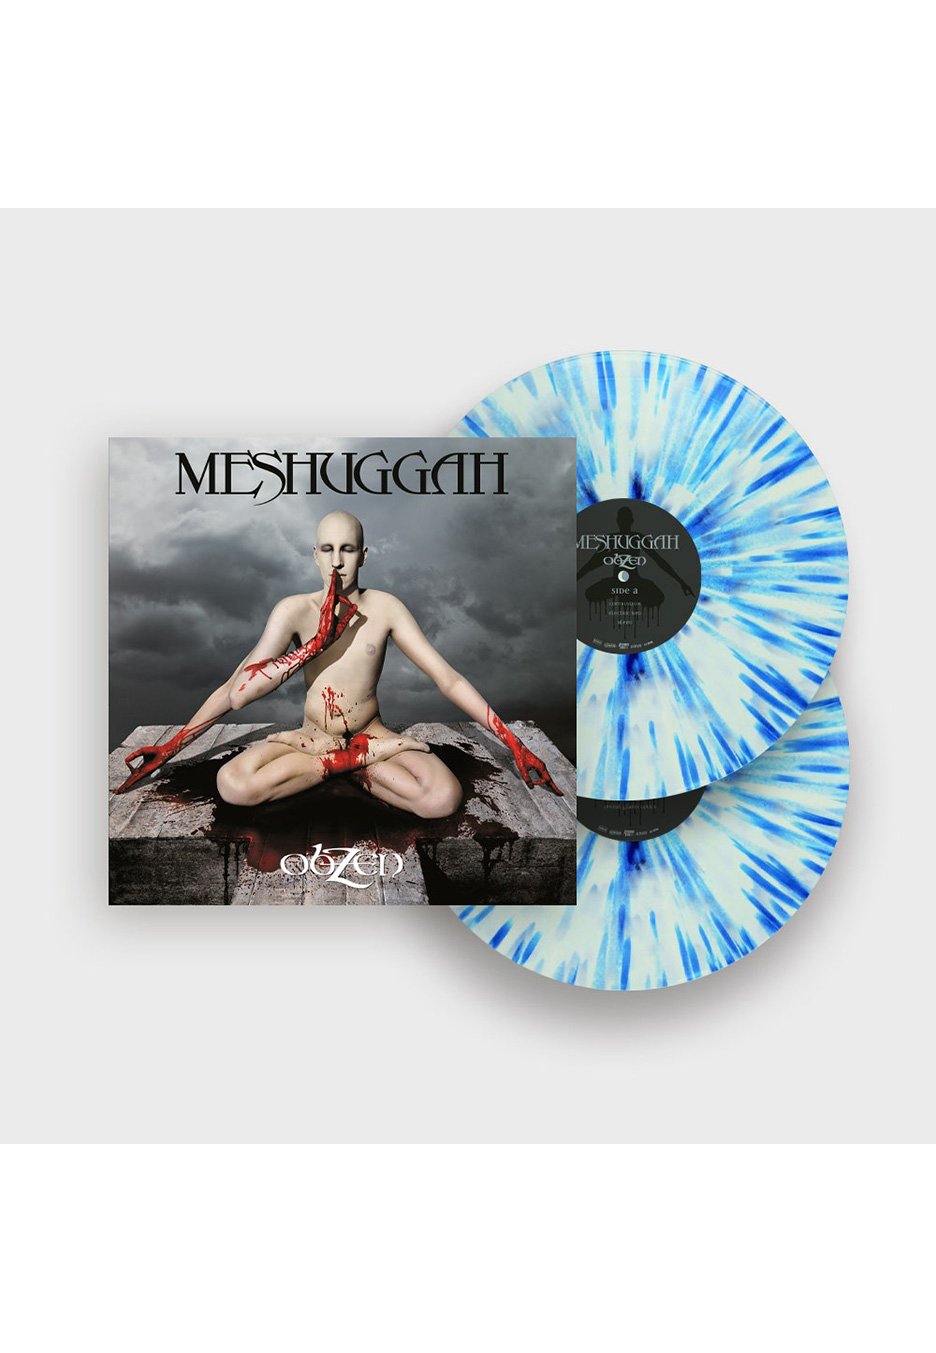 Meshuggah - Obzen White/Clear/Blue - Splattered 2 Vinyl